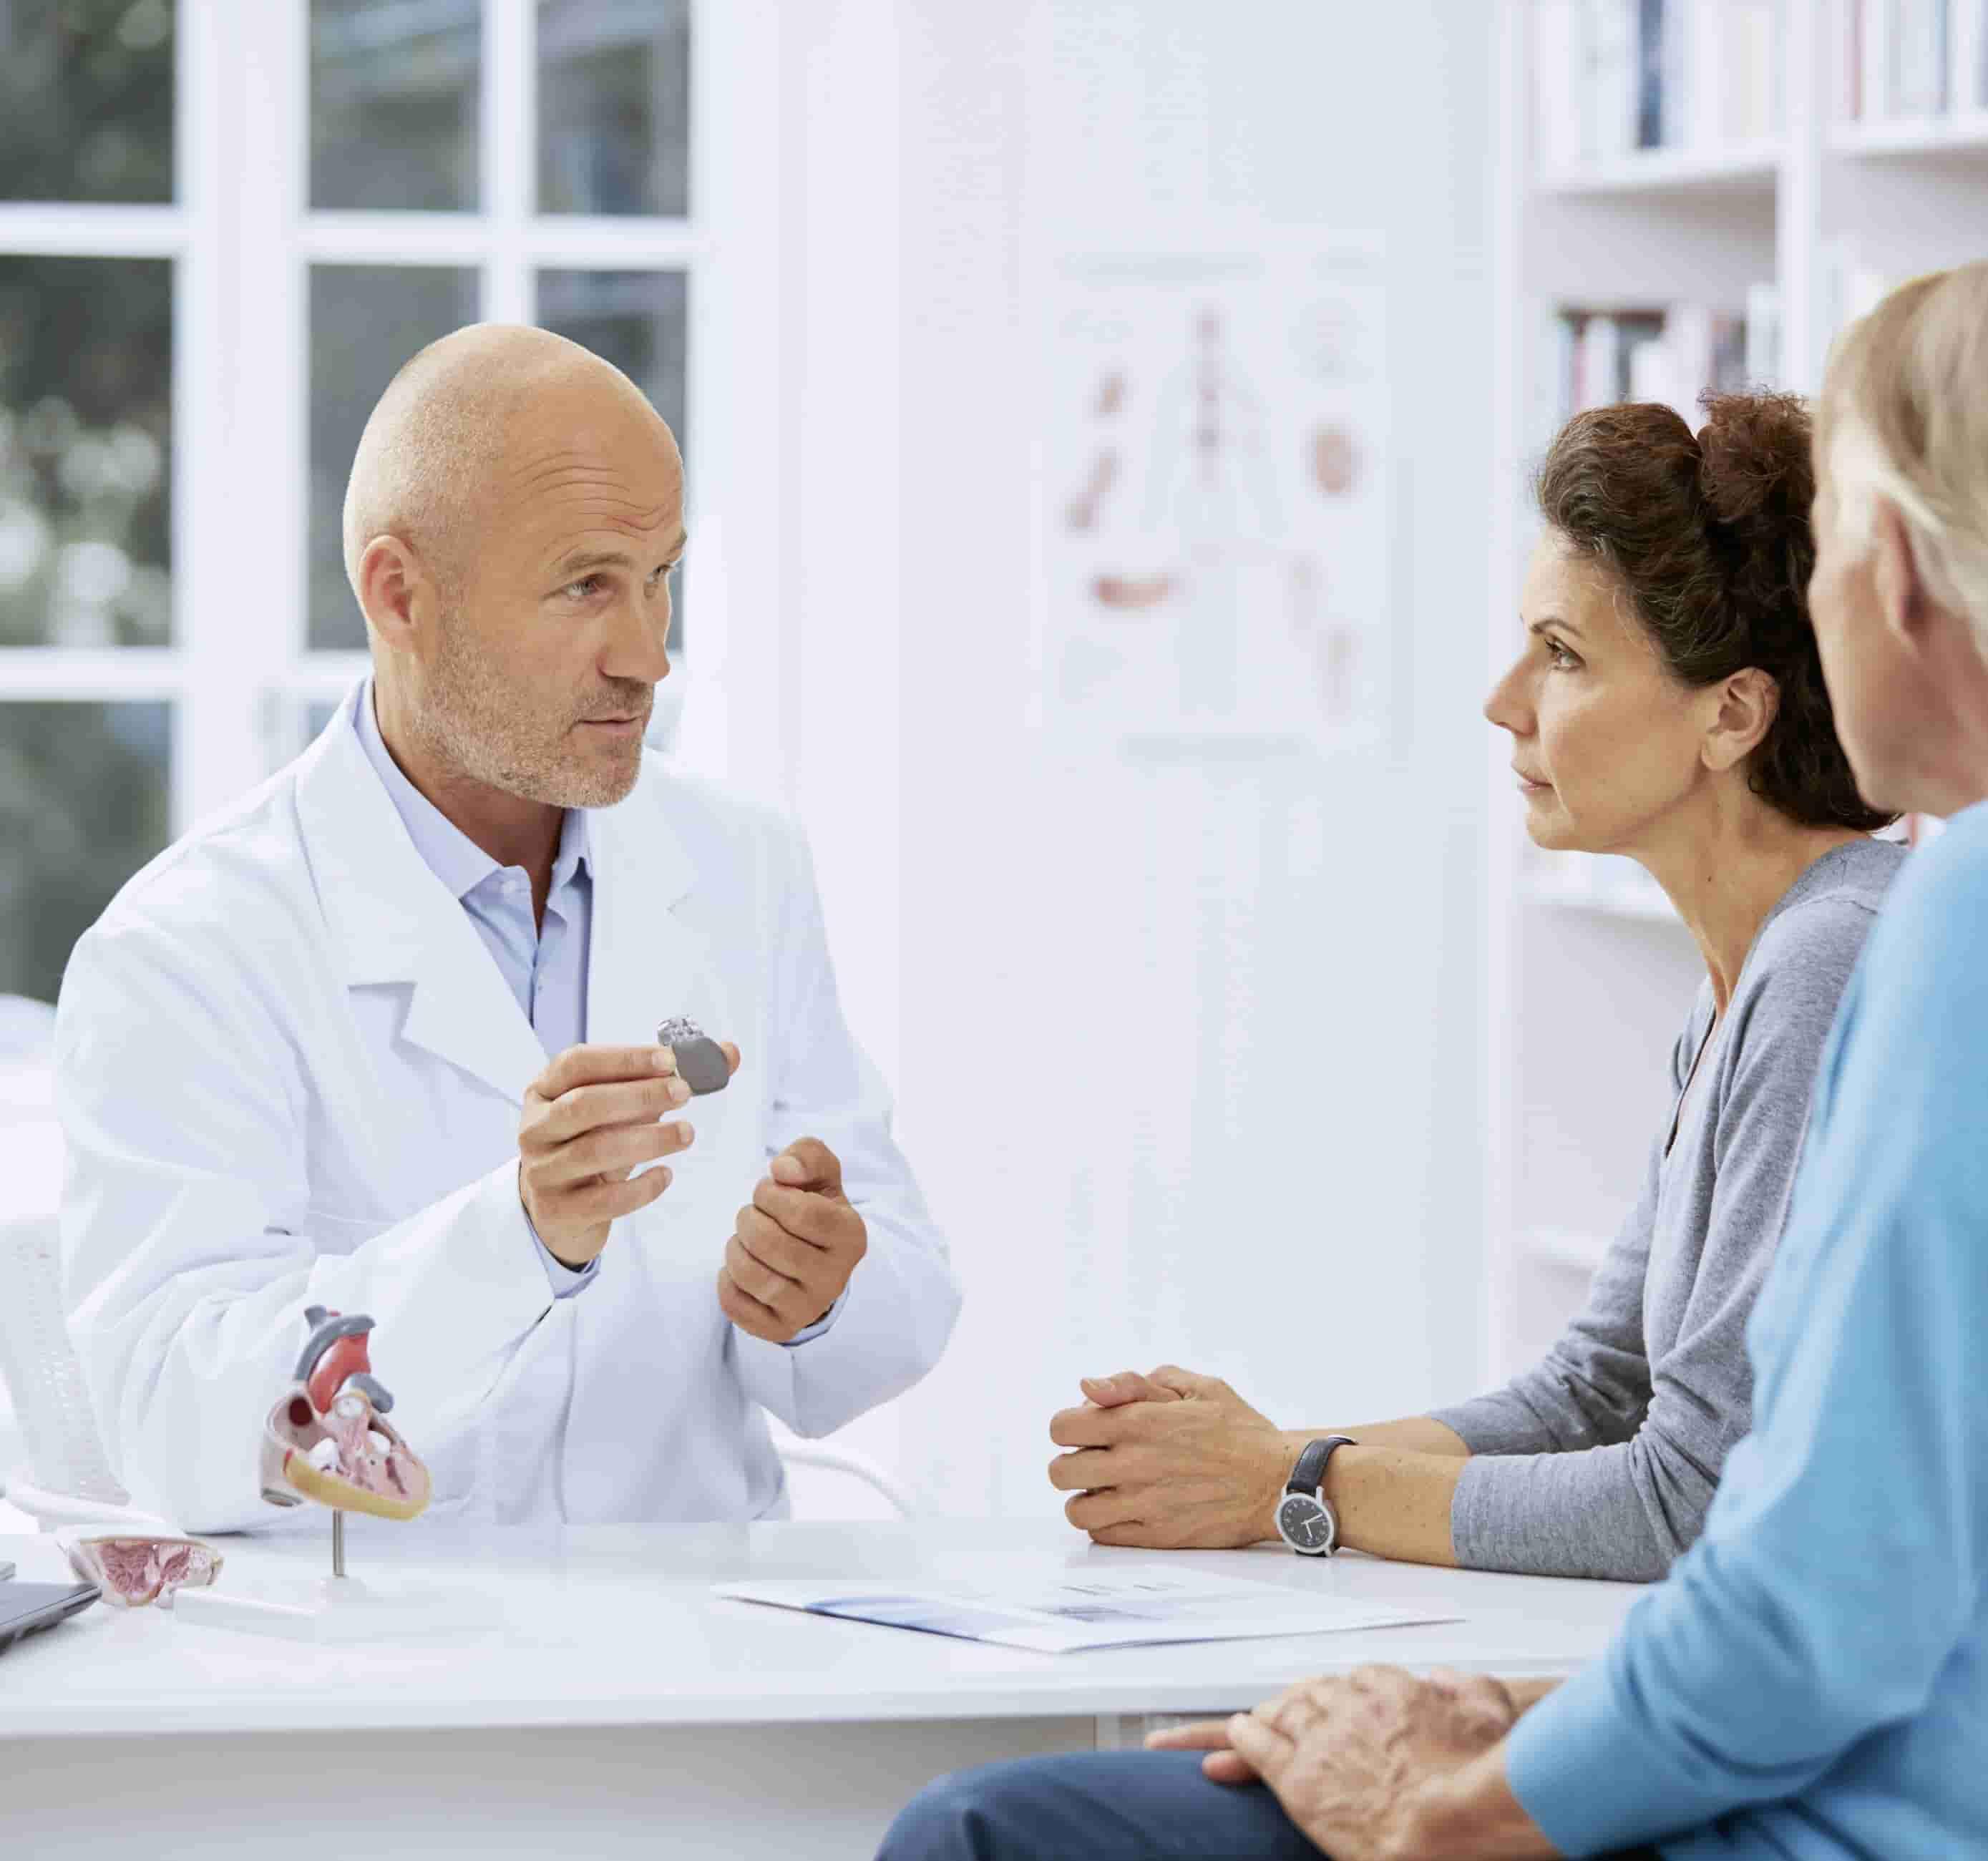 Foto de um médico em primeiro plano, branco, em ambiente hospitalar, mostrando a uma mulher branca de meia-idade, de perfil, um pequeno aparelho de cor cinza. Ao lado da mulher está de perfil um homem branco sentado